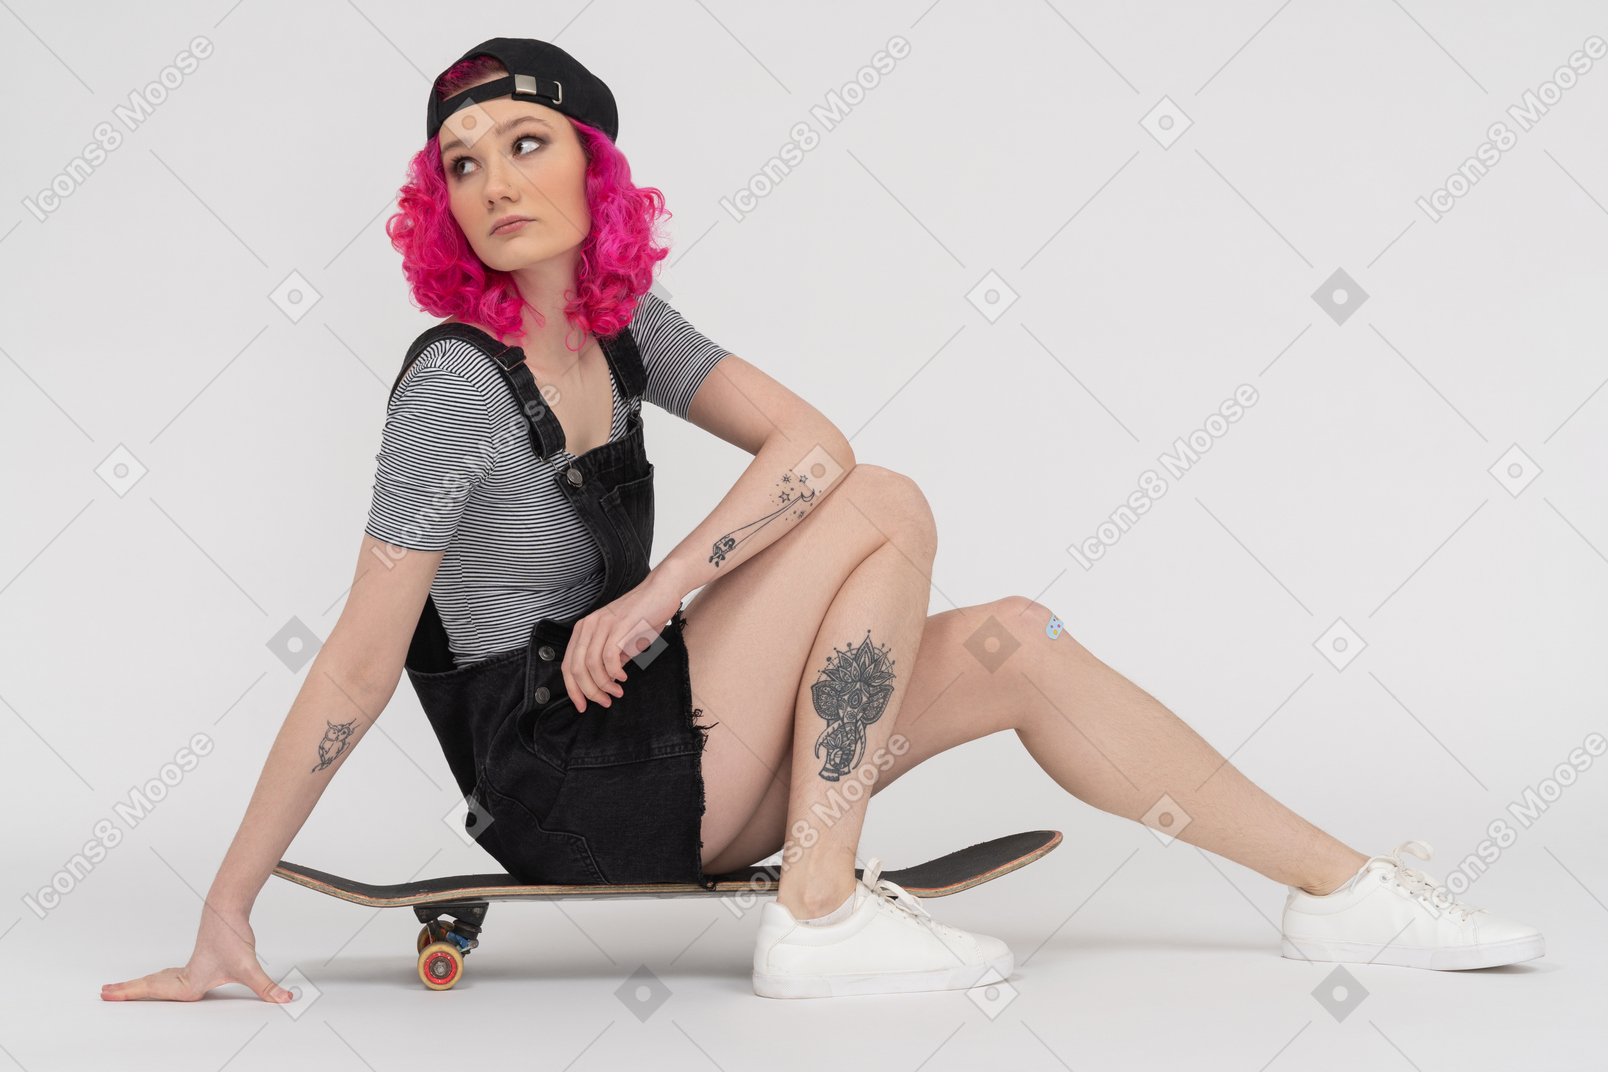 Chica tatuada con cabello rosado sentada en una patineta